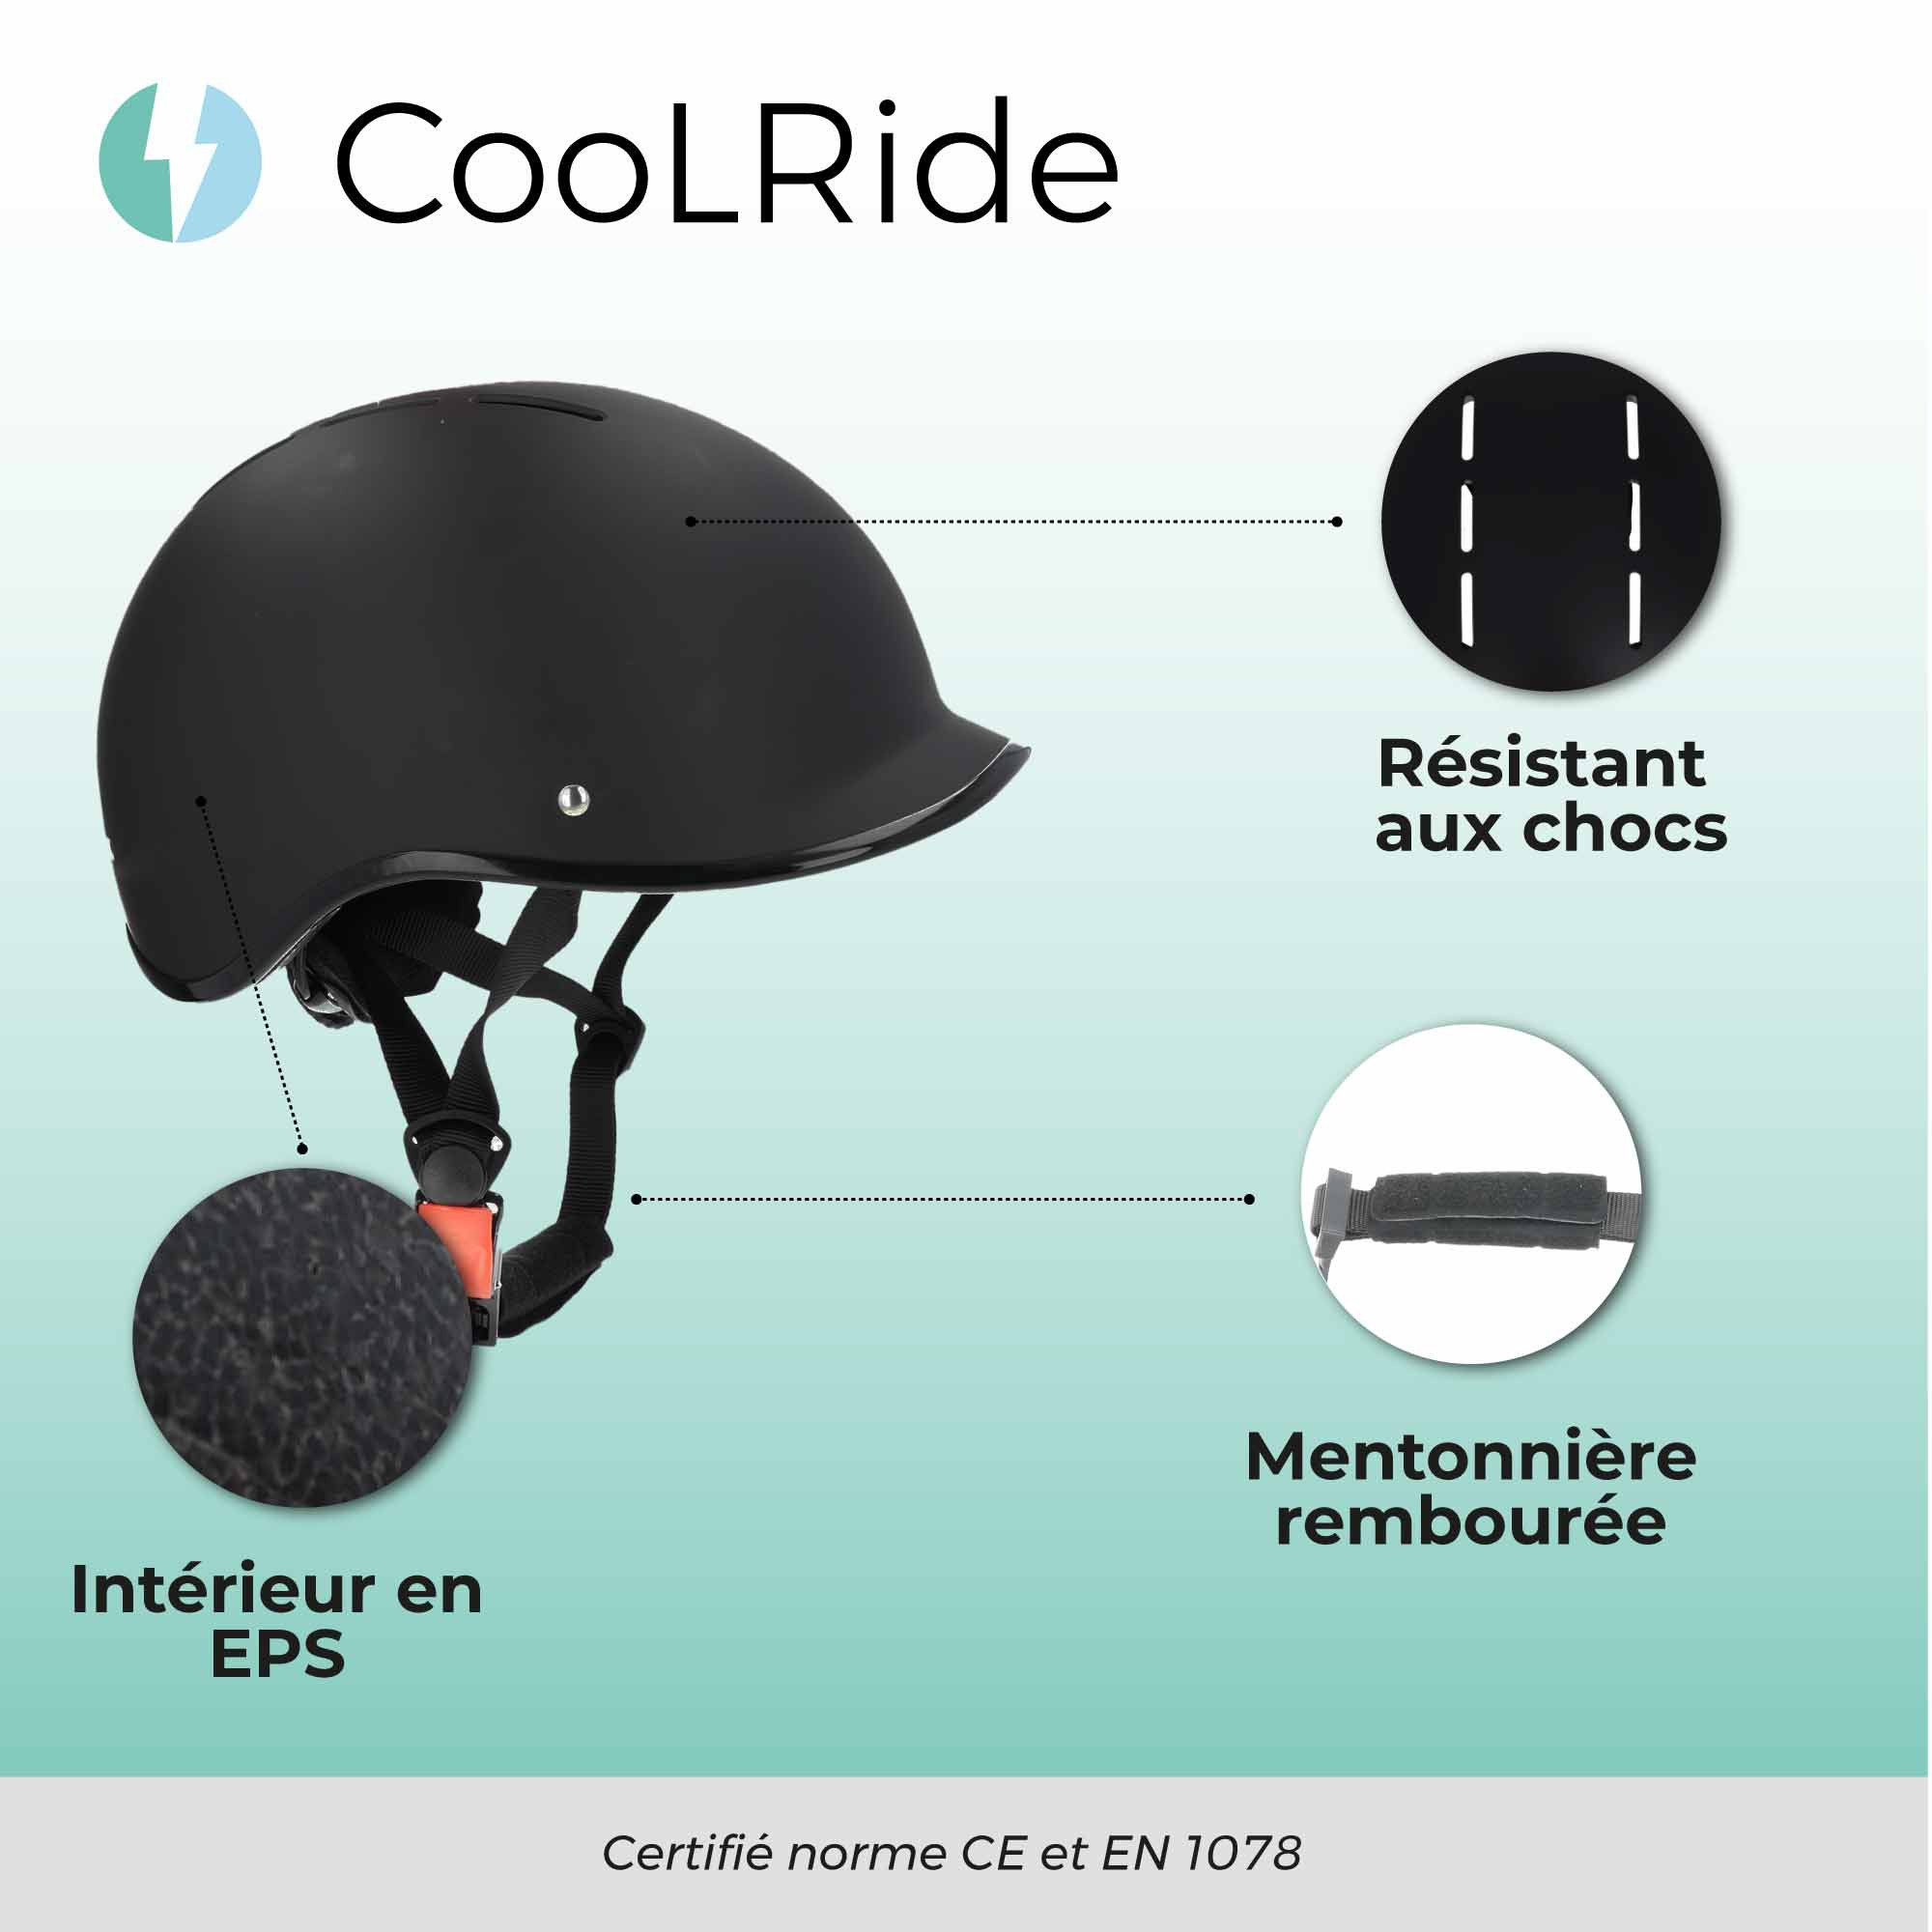 Cool ride CASQUE URBAIN AVEC VISIÈRE AVEC HEADLOCK NOIR L (59-61 CM)